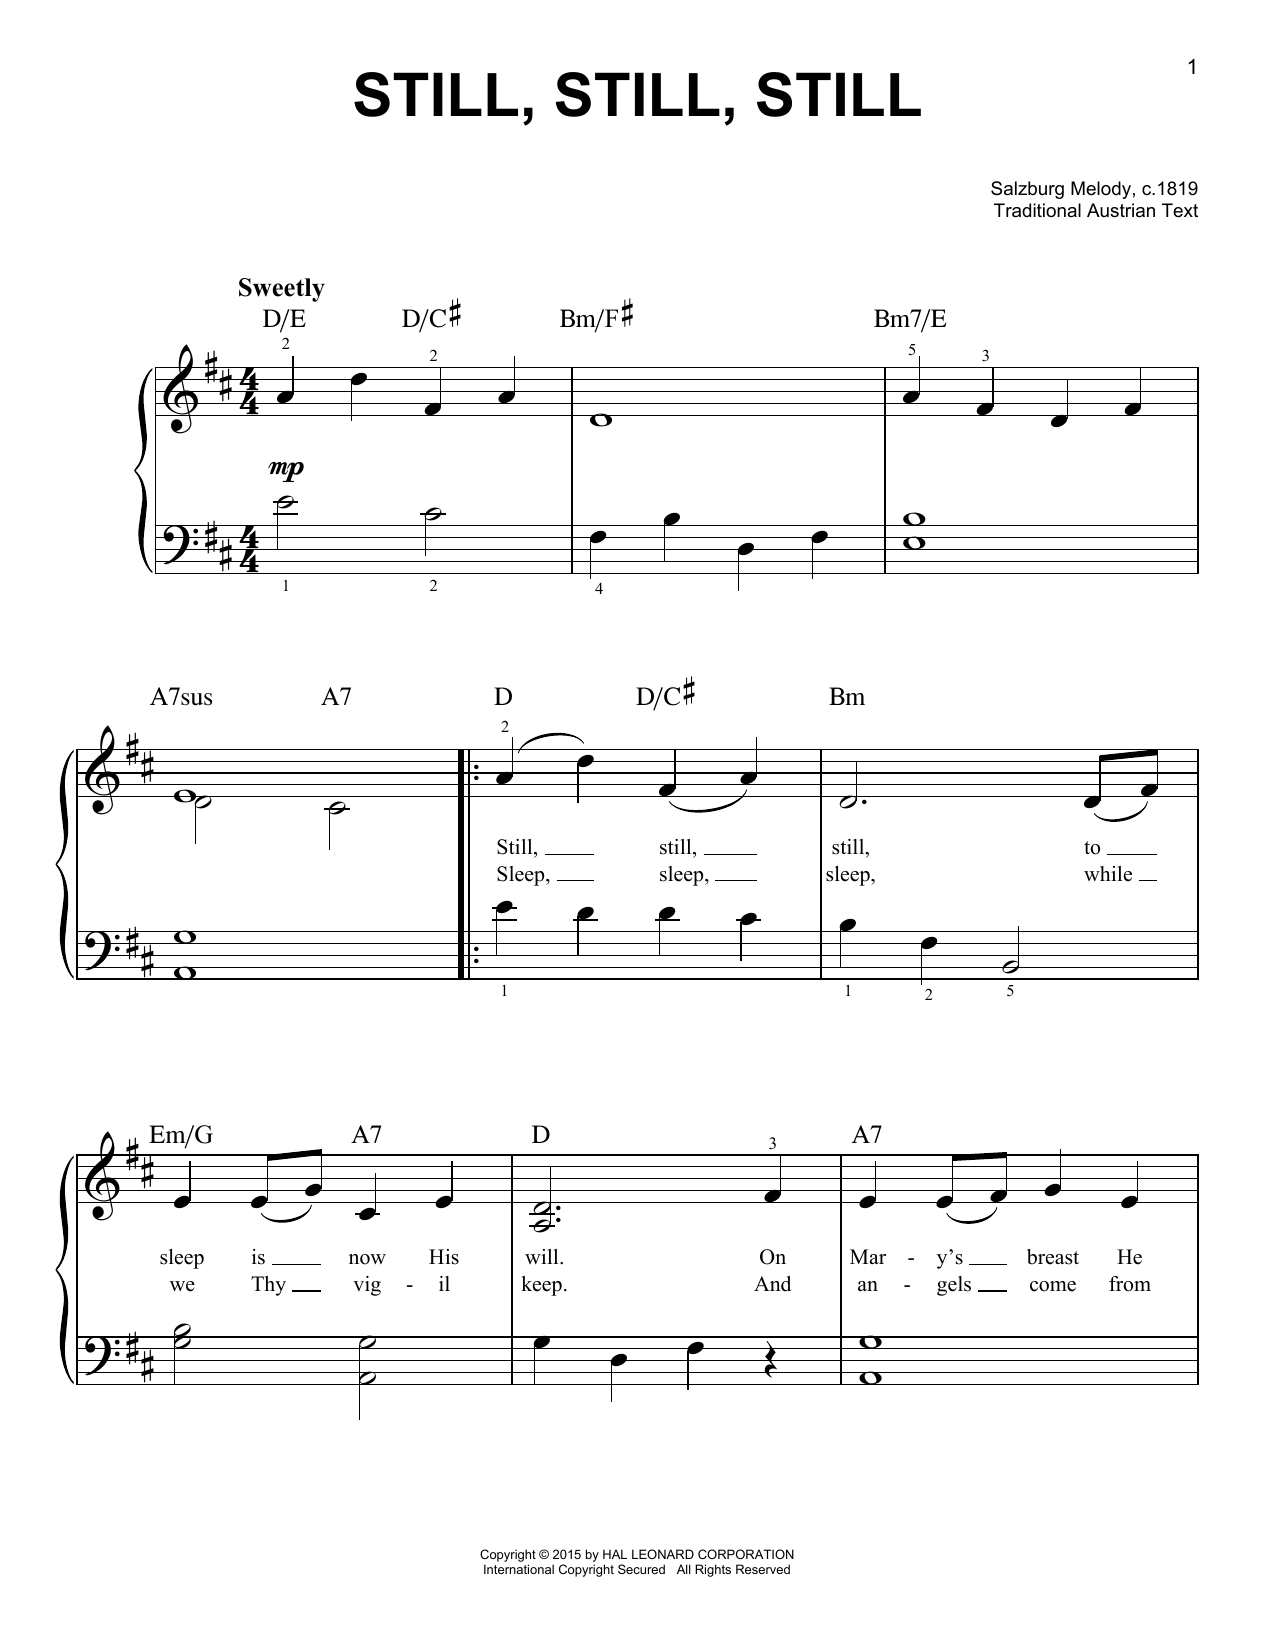 Salzburg Melody, c.1819 Still, Still, Still Sheet Music Notes & Chords for VCLDT - Download or Print PDF